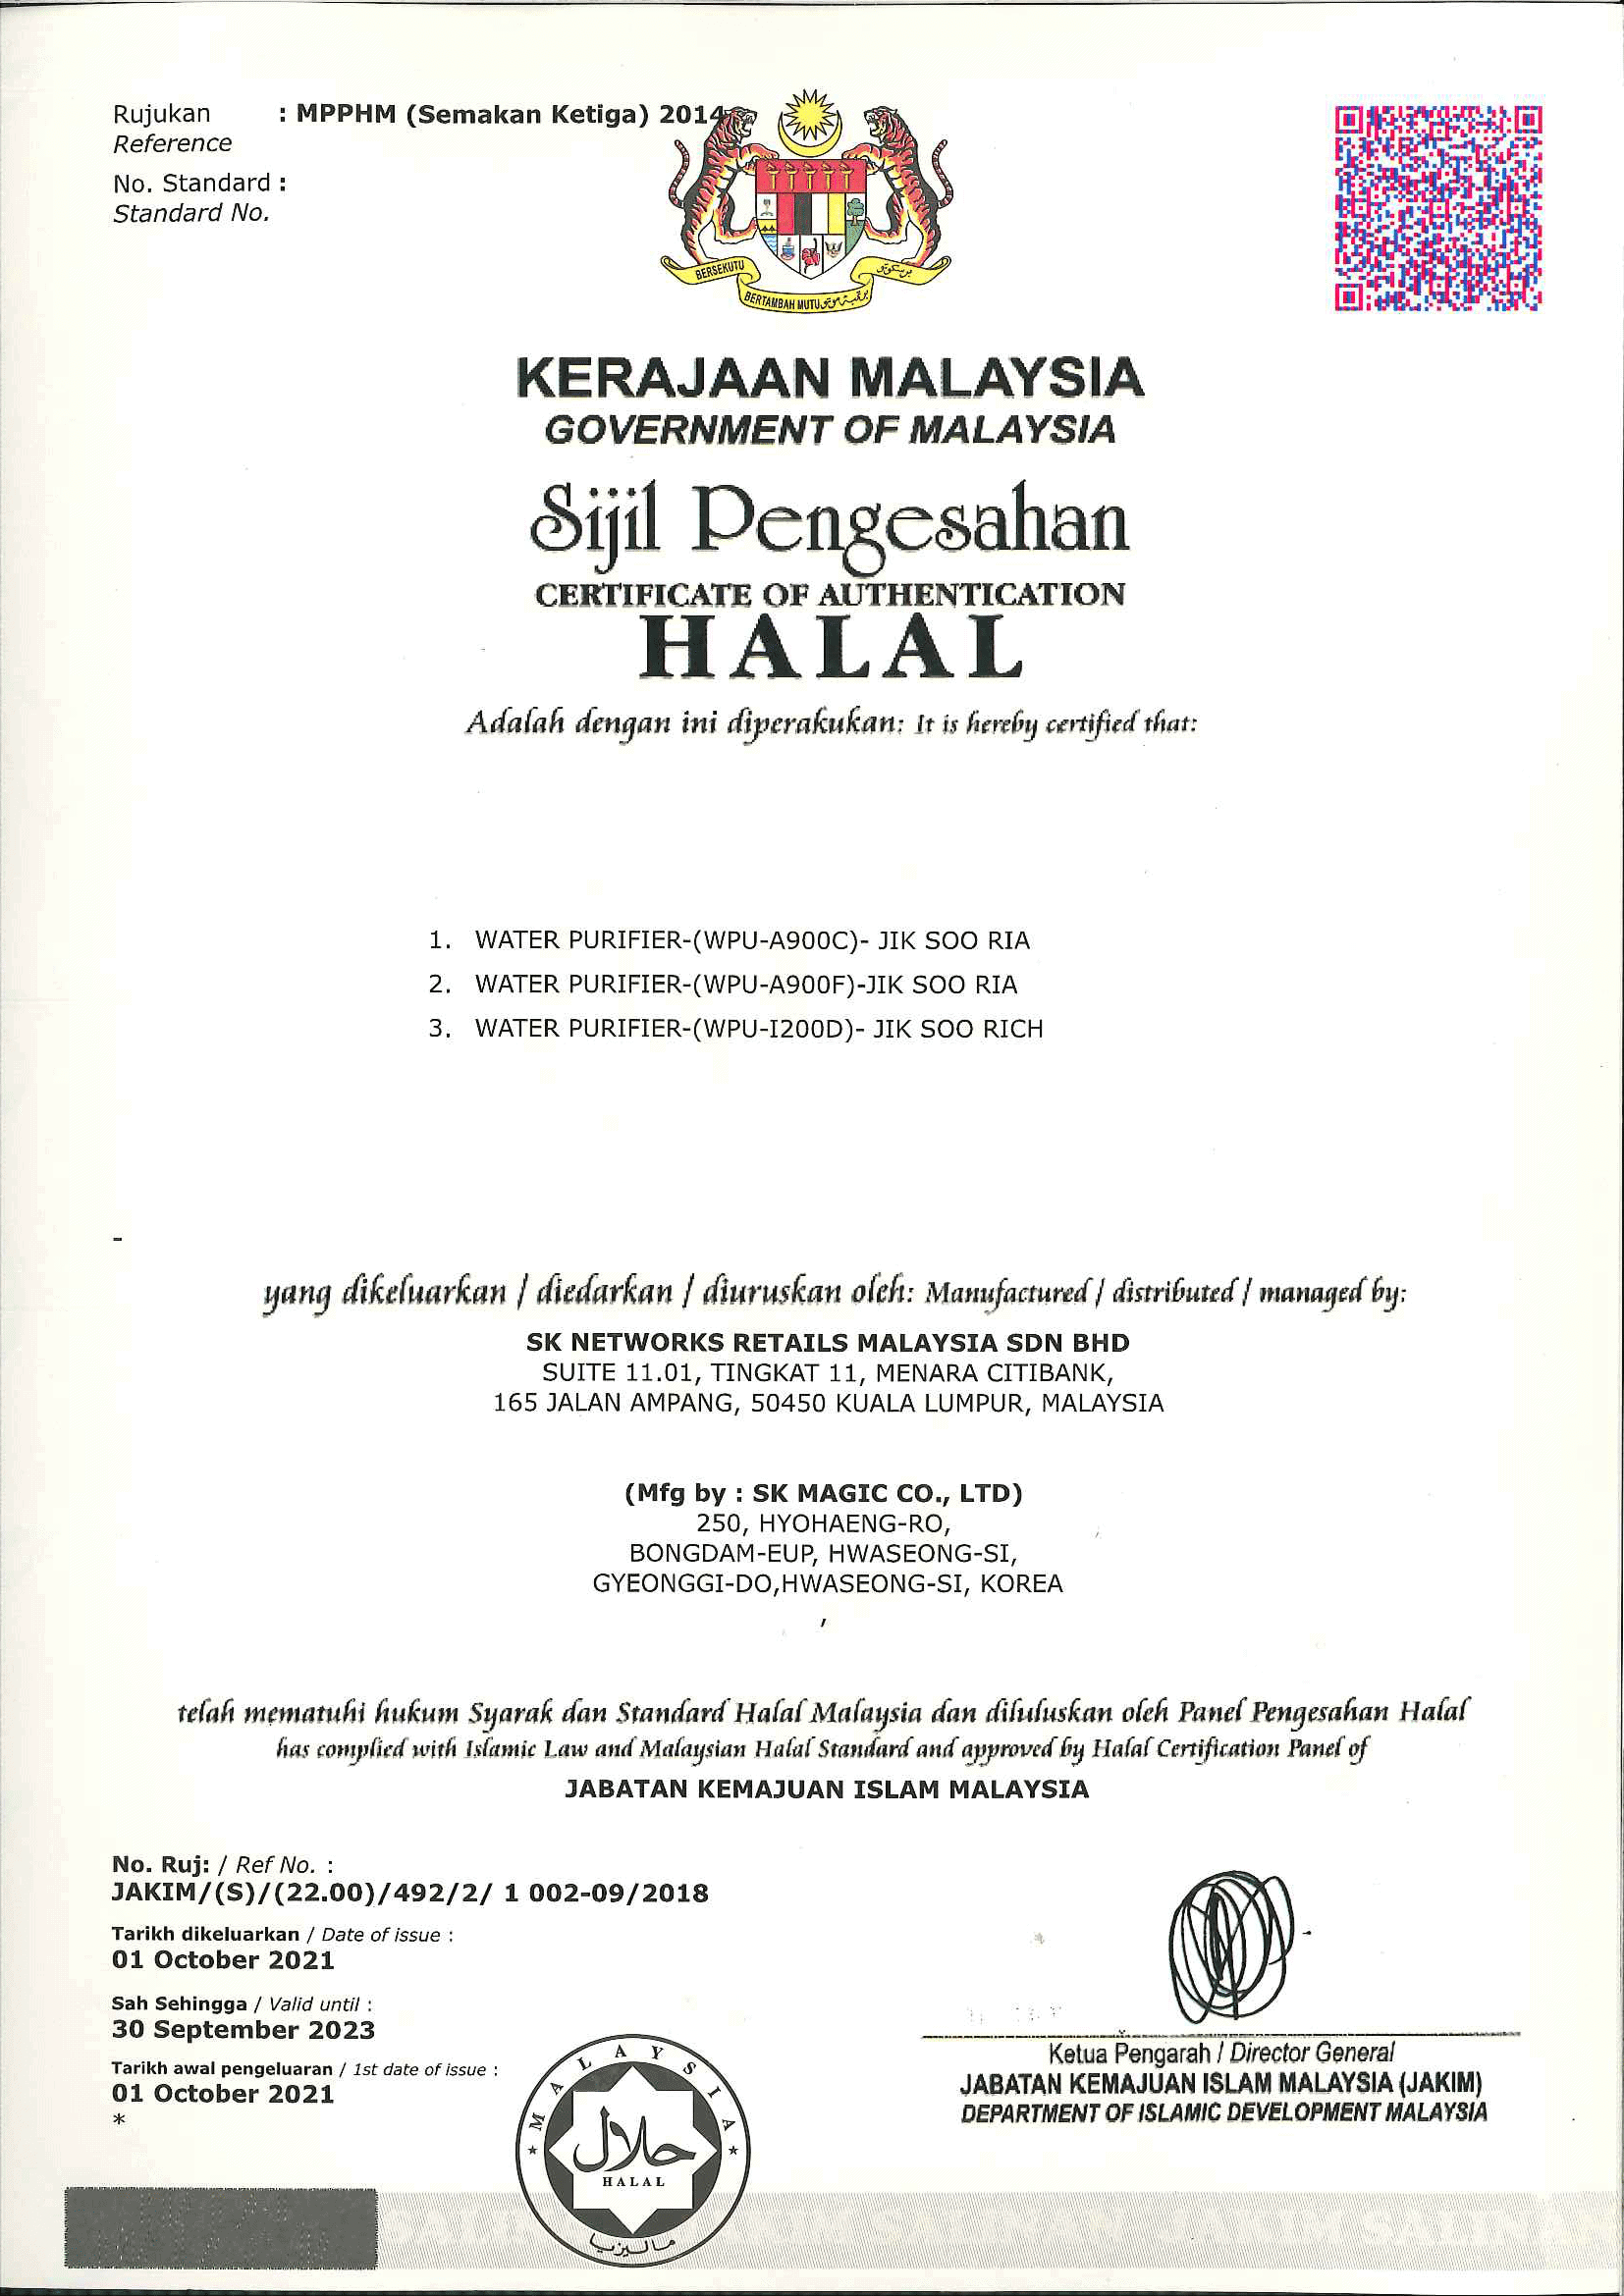 Halal Certificate - JIK.SOO Rich & Ria'-1